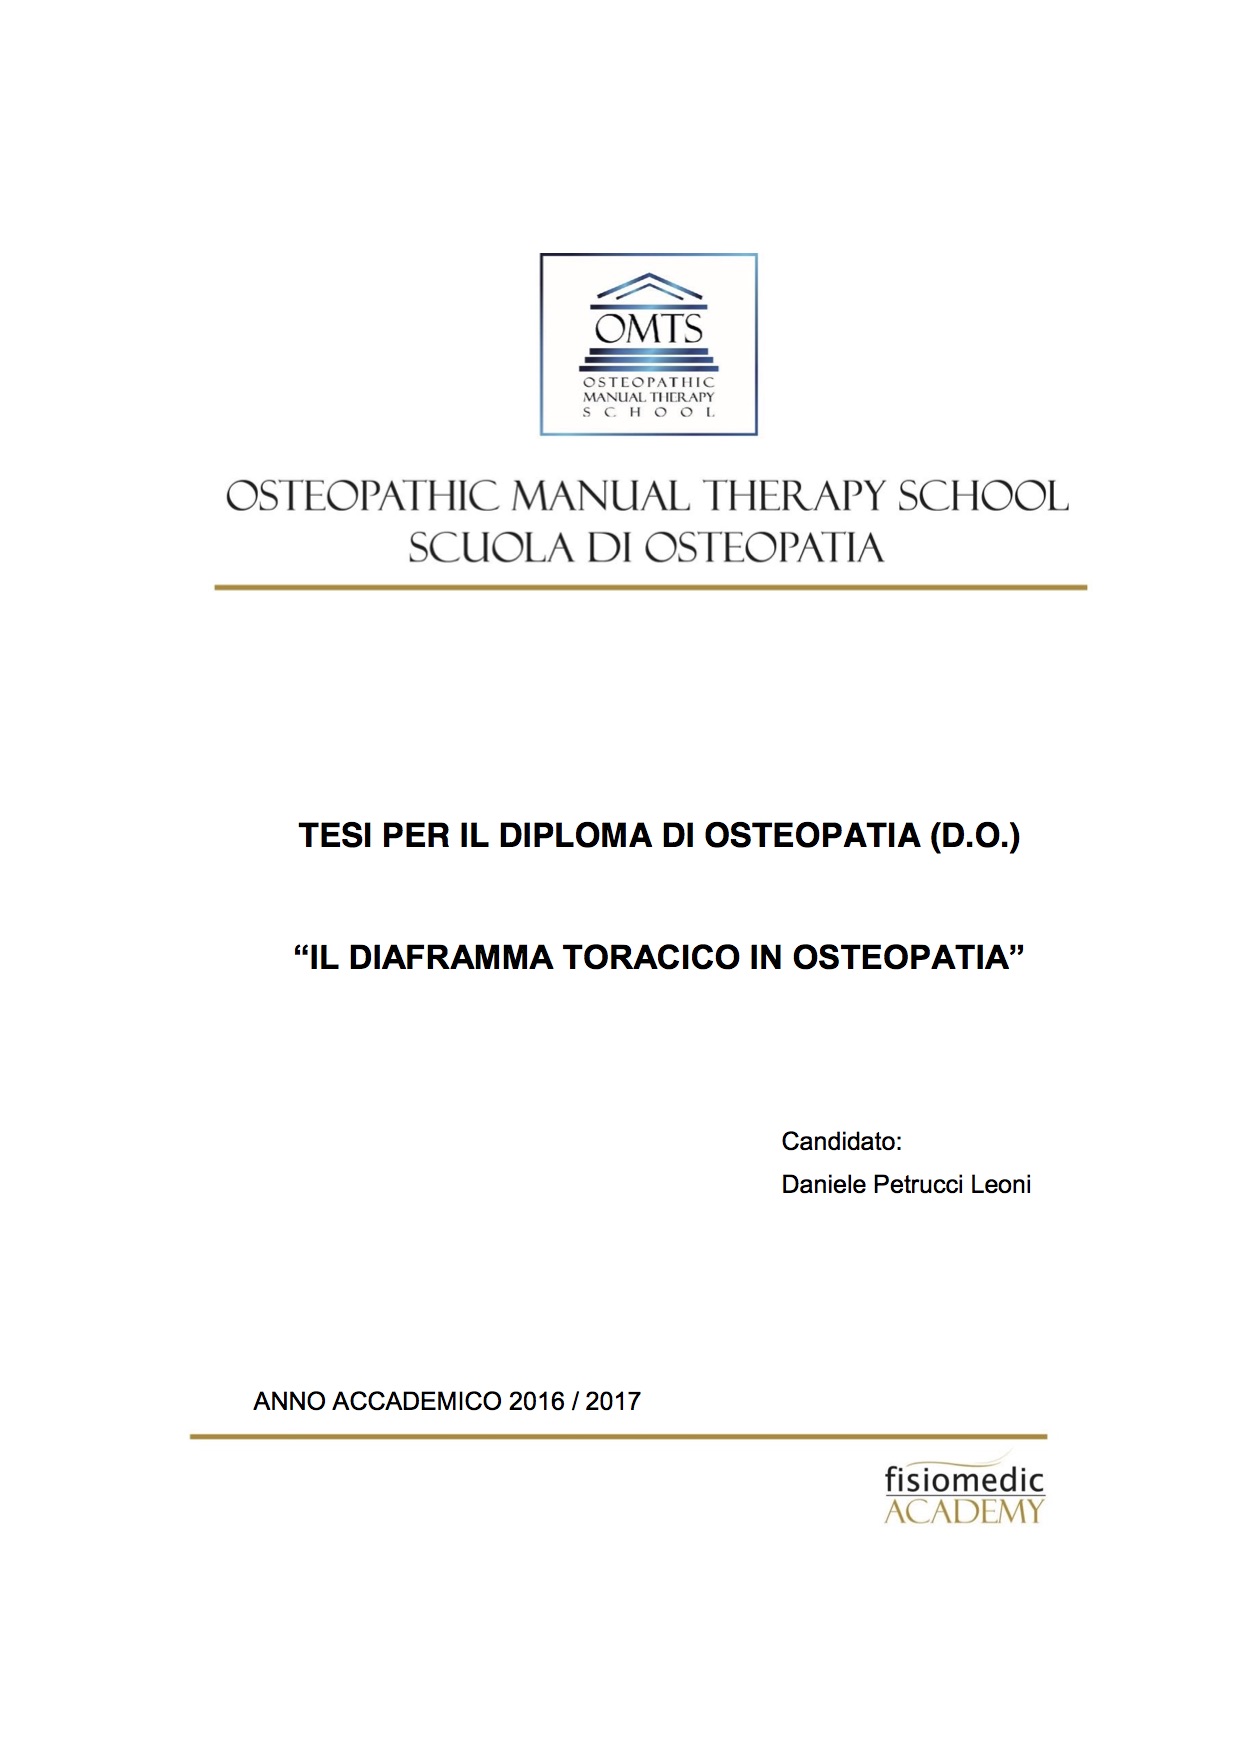 Petrucci Leoni Tesi Diploma Osteopatia 2017